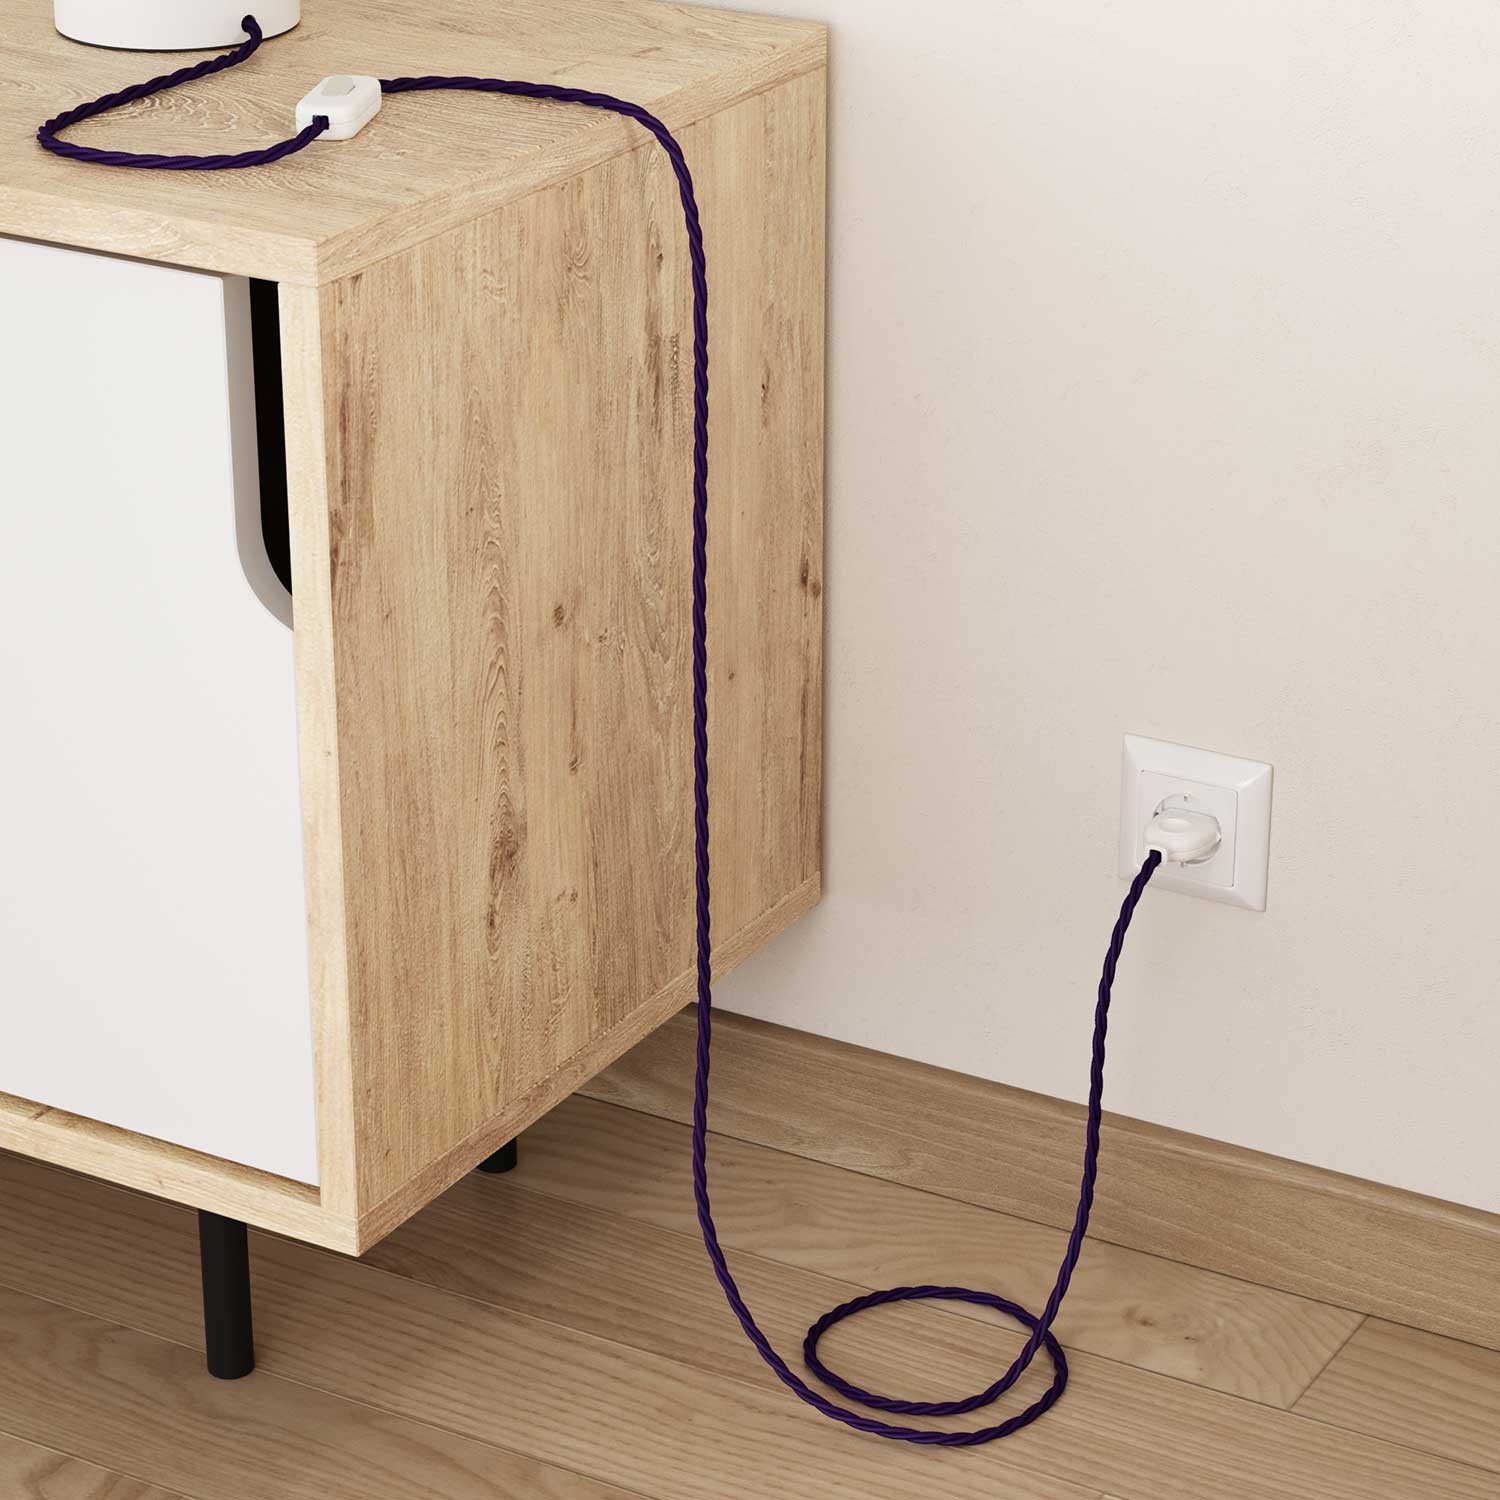 Elektrisches Kabel geflochten überzogen mit Textil-Seideneffekt Einfarbig Violett TM14